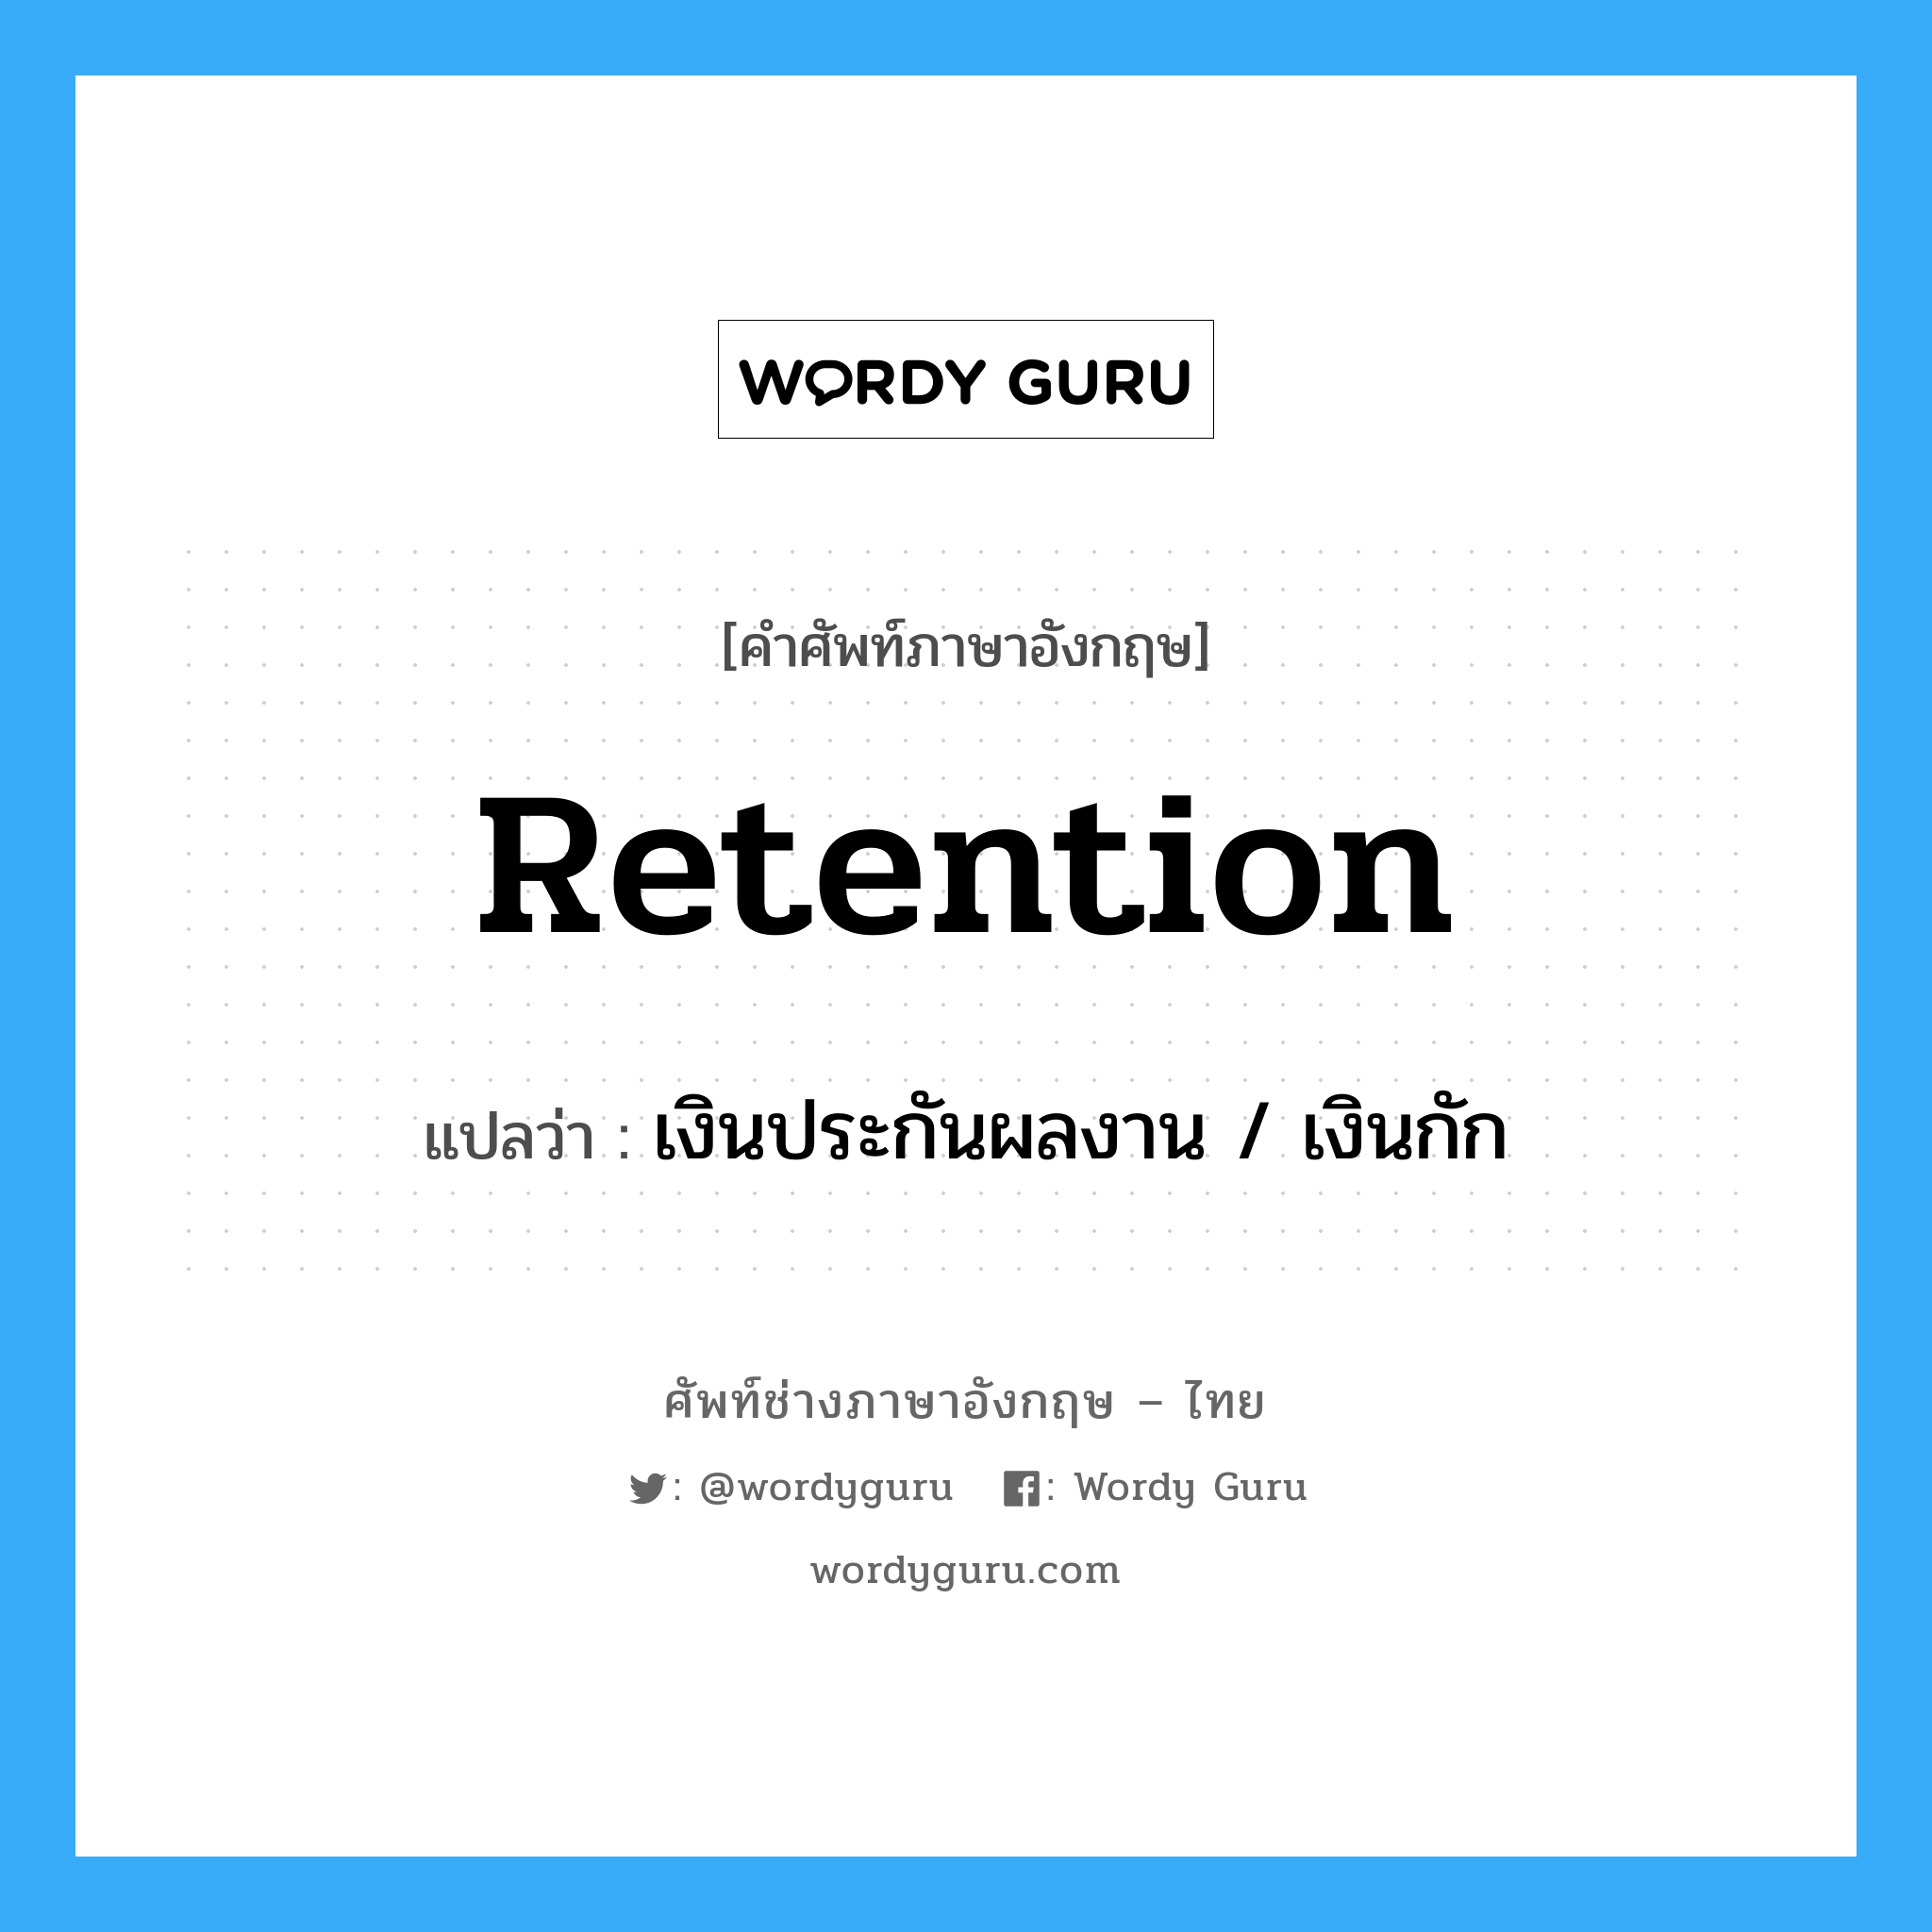 retention แปลว่า?, คำศัพท์ช่างภาษาอังกฤษ - ไทย retention คำศัพท์ภาษาอังกฤษ retention แปลว่า เงินประกันผลงาน / เงินกัก